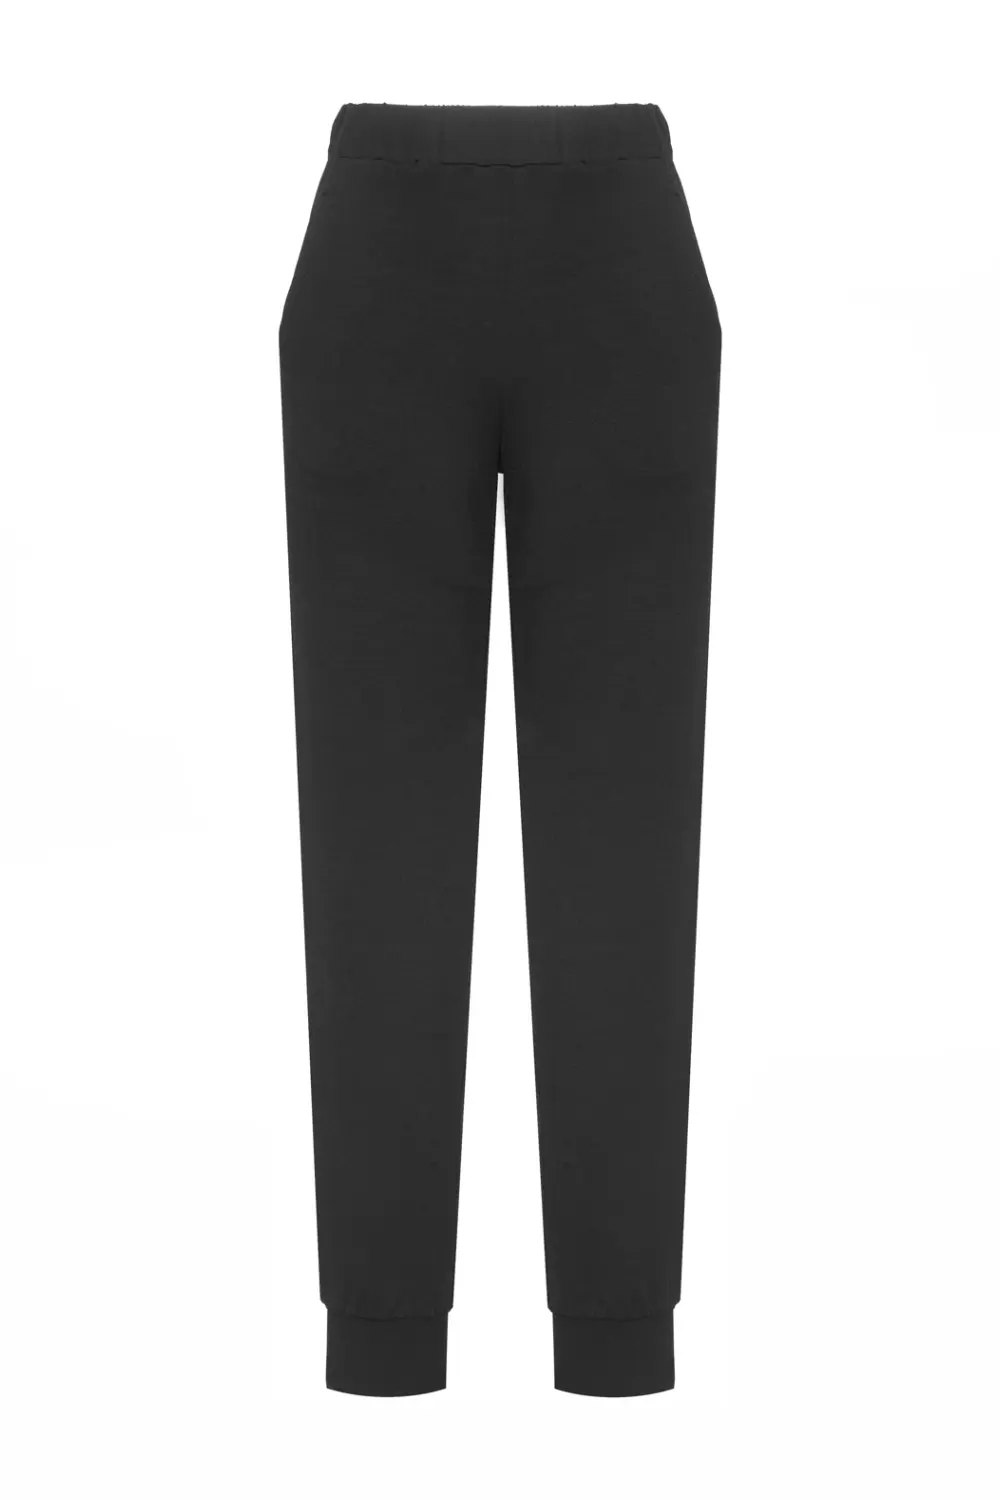 czarne spodnie damskie dresowe micromodal polski dres marka Vito Vergelis